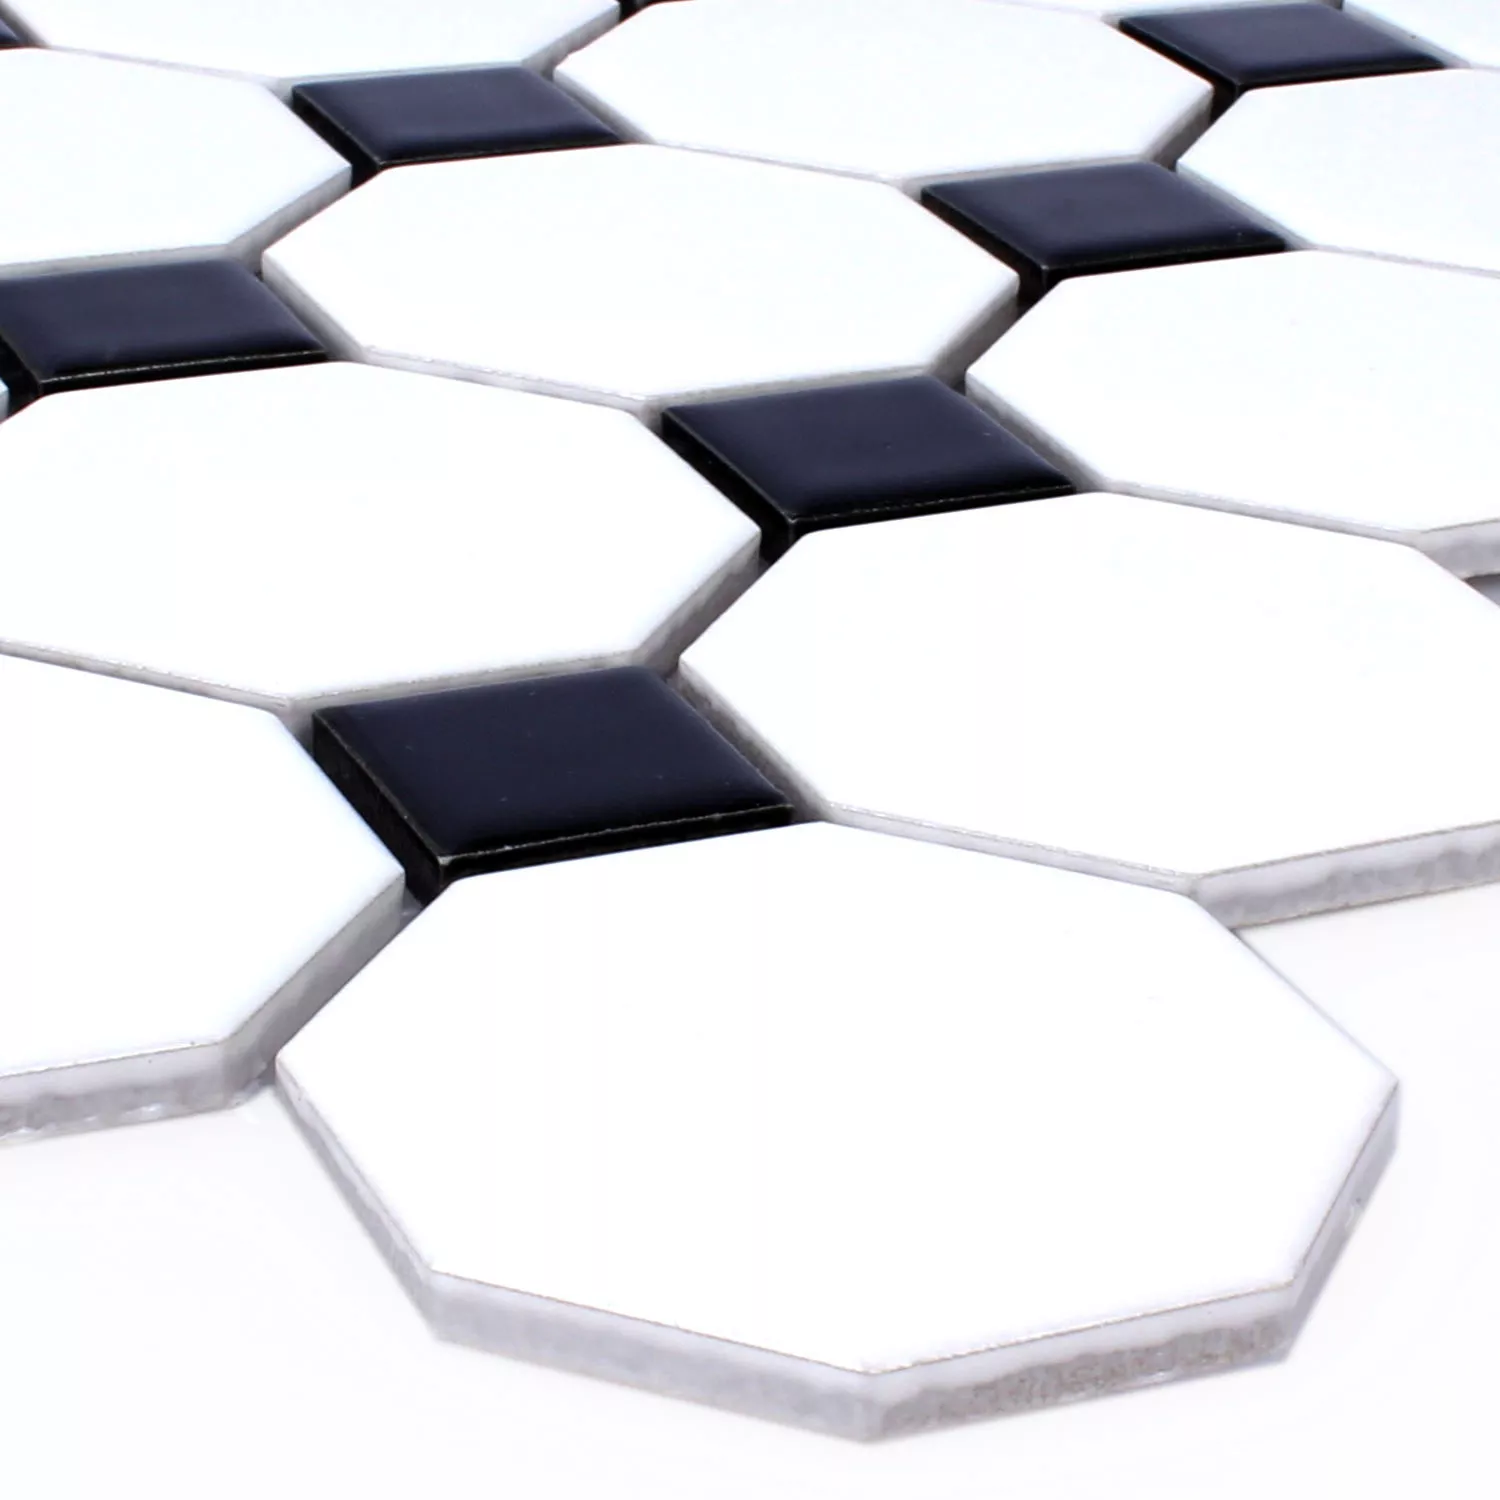 Sample Mosaic Tiles Ceramic Octagon Belami Black White